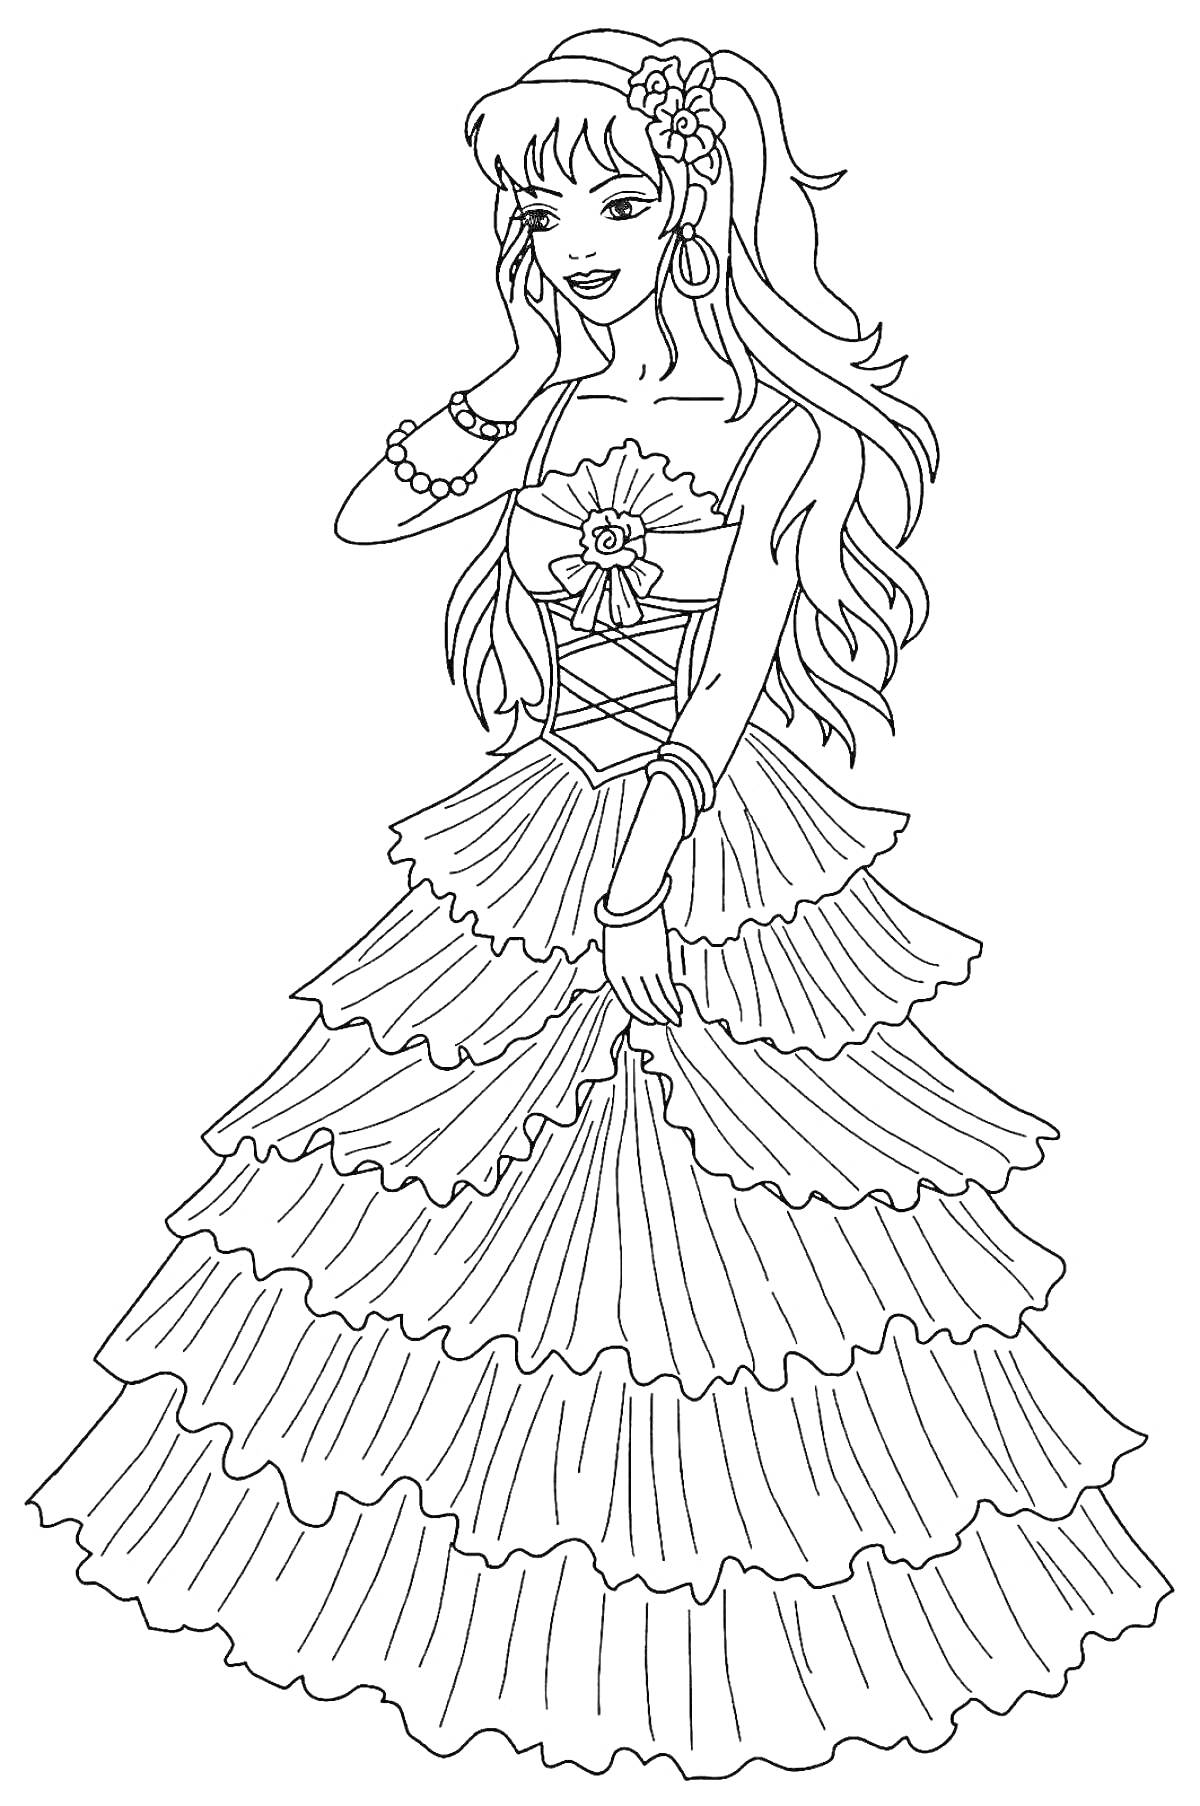 Раскраска Принцесса в длинном пышном платье с цветком на корсаже, с серьгами и браслетами, улыбающаяся, раскраска